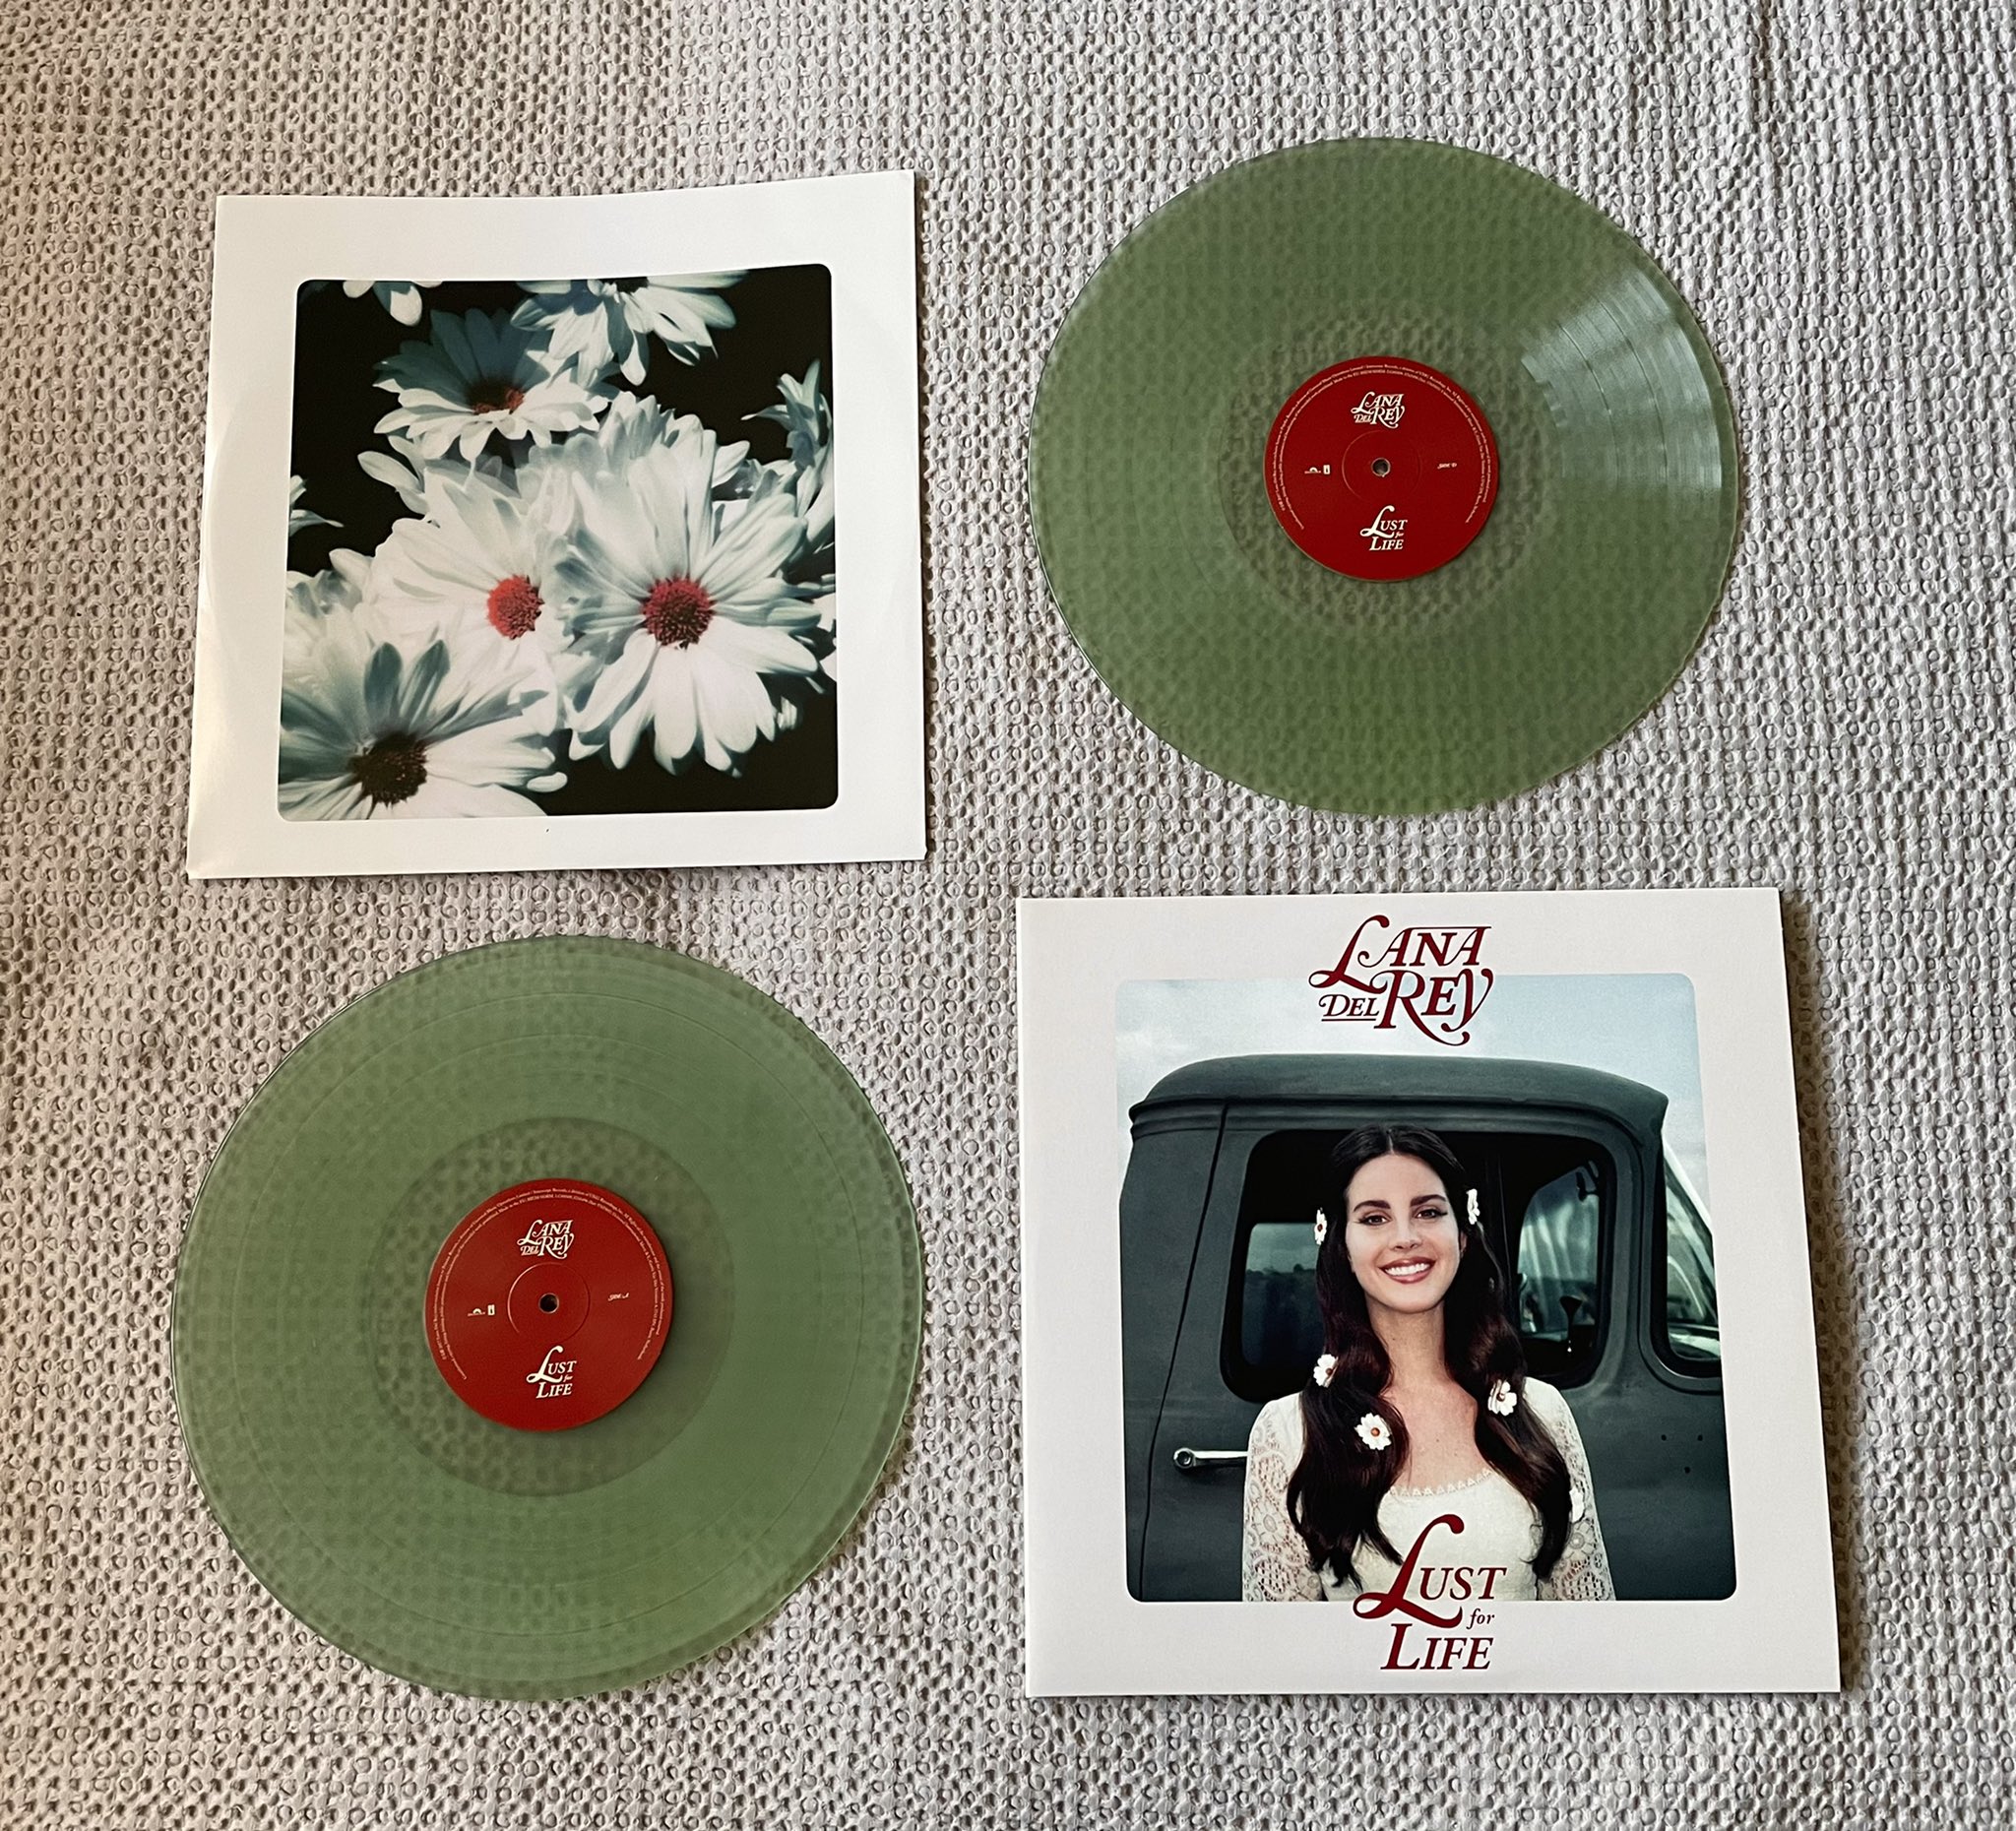 𝓌𝒾𝓁𝓈𝒽𝒾𝓇𝑒 𝒷𝑜𝓊𝓁𝑒𝓋𝒶𝓇𝒹 🥀 on Twitter: "Lana Del Rey “Lust for  Life” (2017) Coke bottle clear vinyl https://t.co/i7wtGmihOF" / Twitter